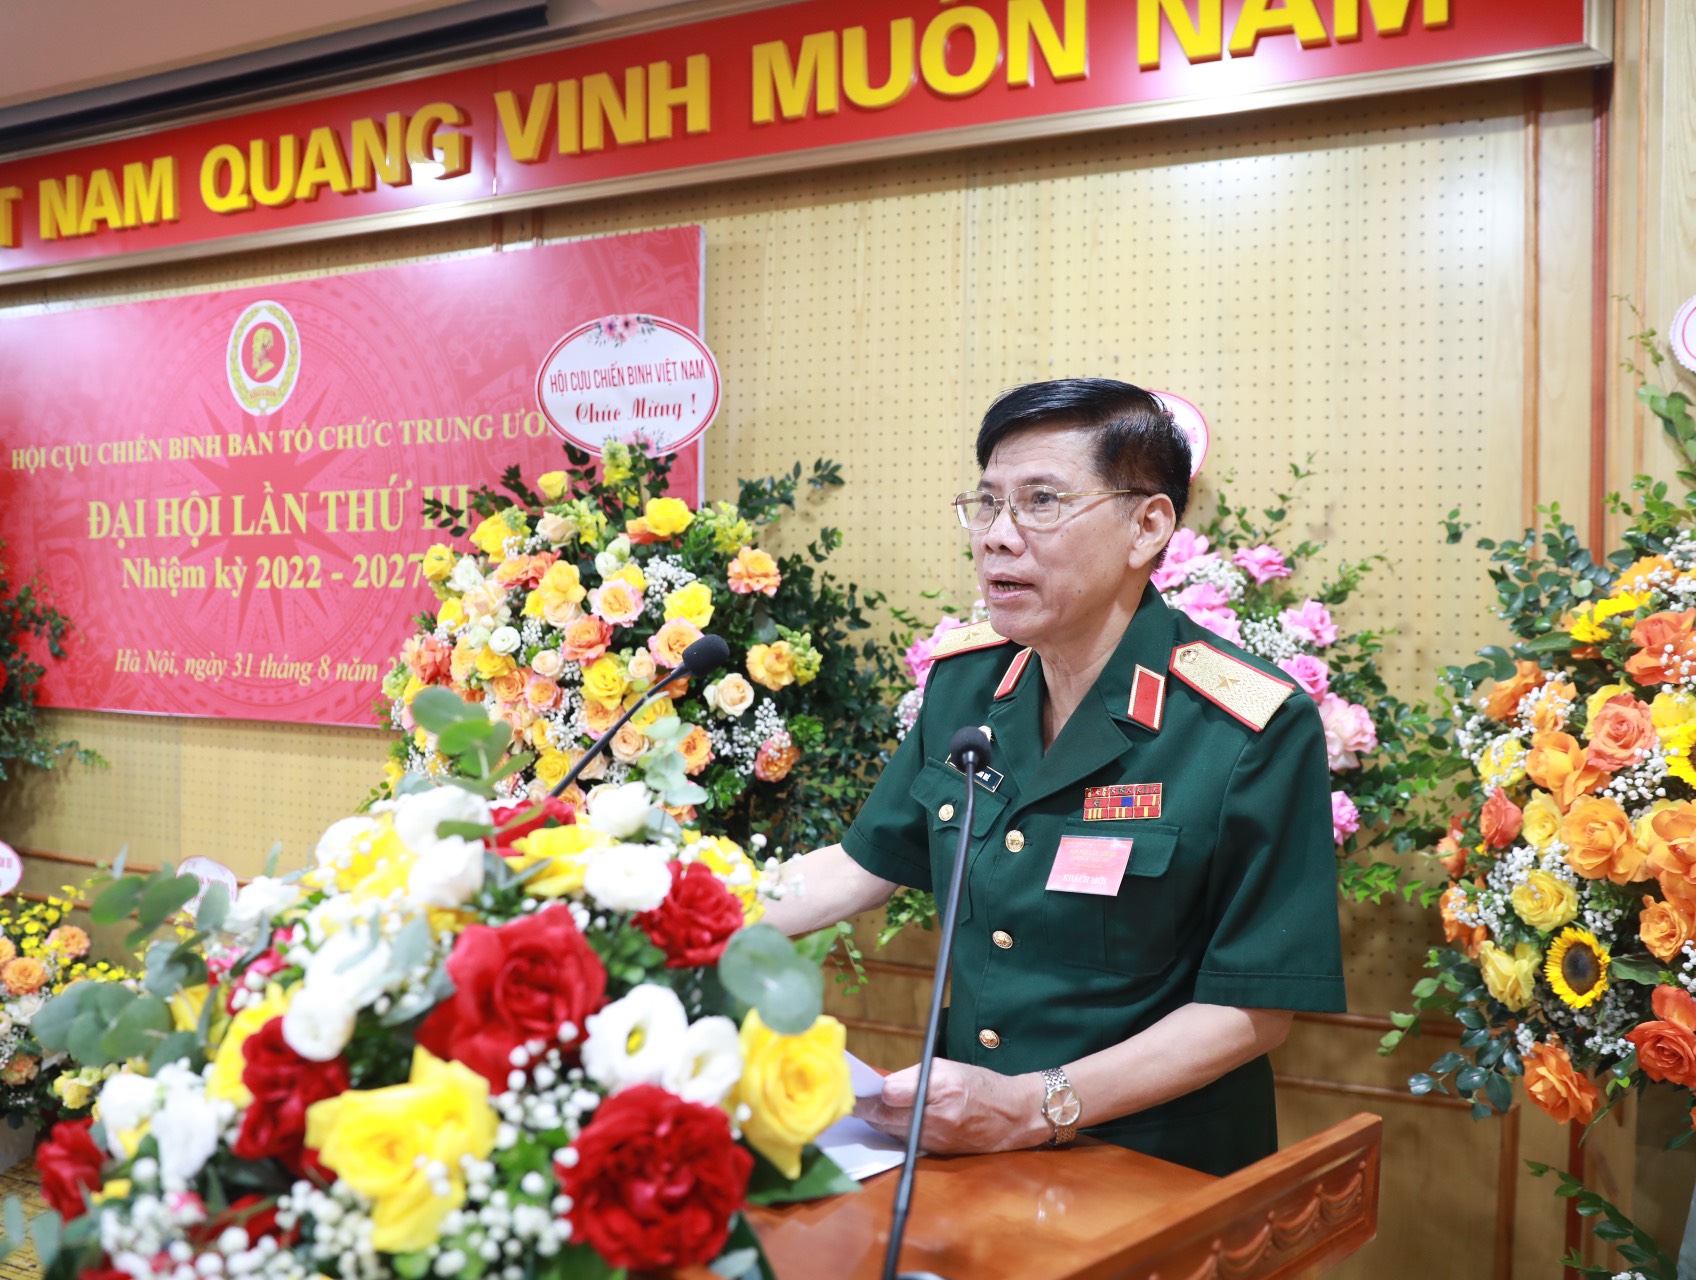 Đồng chí Lê Khương Mẽ, Ủy viên Ban Thường vụ, Trưởng Ban Tổ chức chính sách Trung ương Hội Cựu Chiến binh Việt Nam phát biểu tại Đại hội